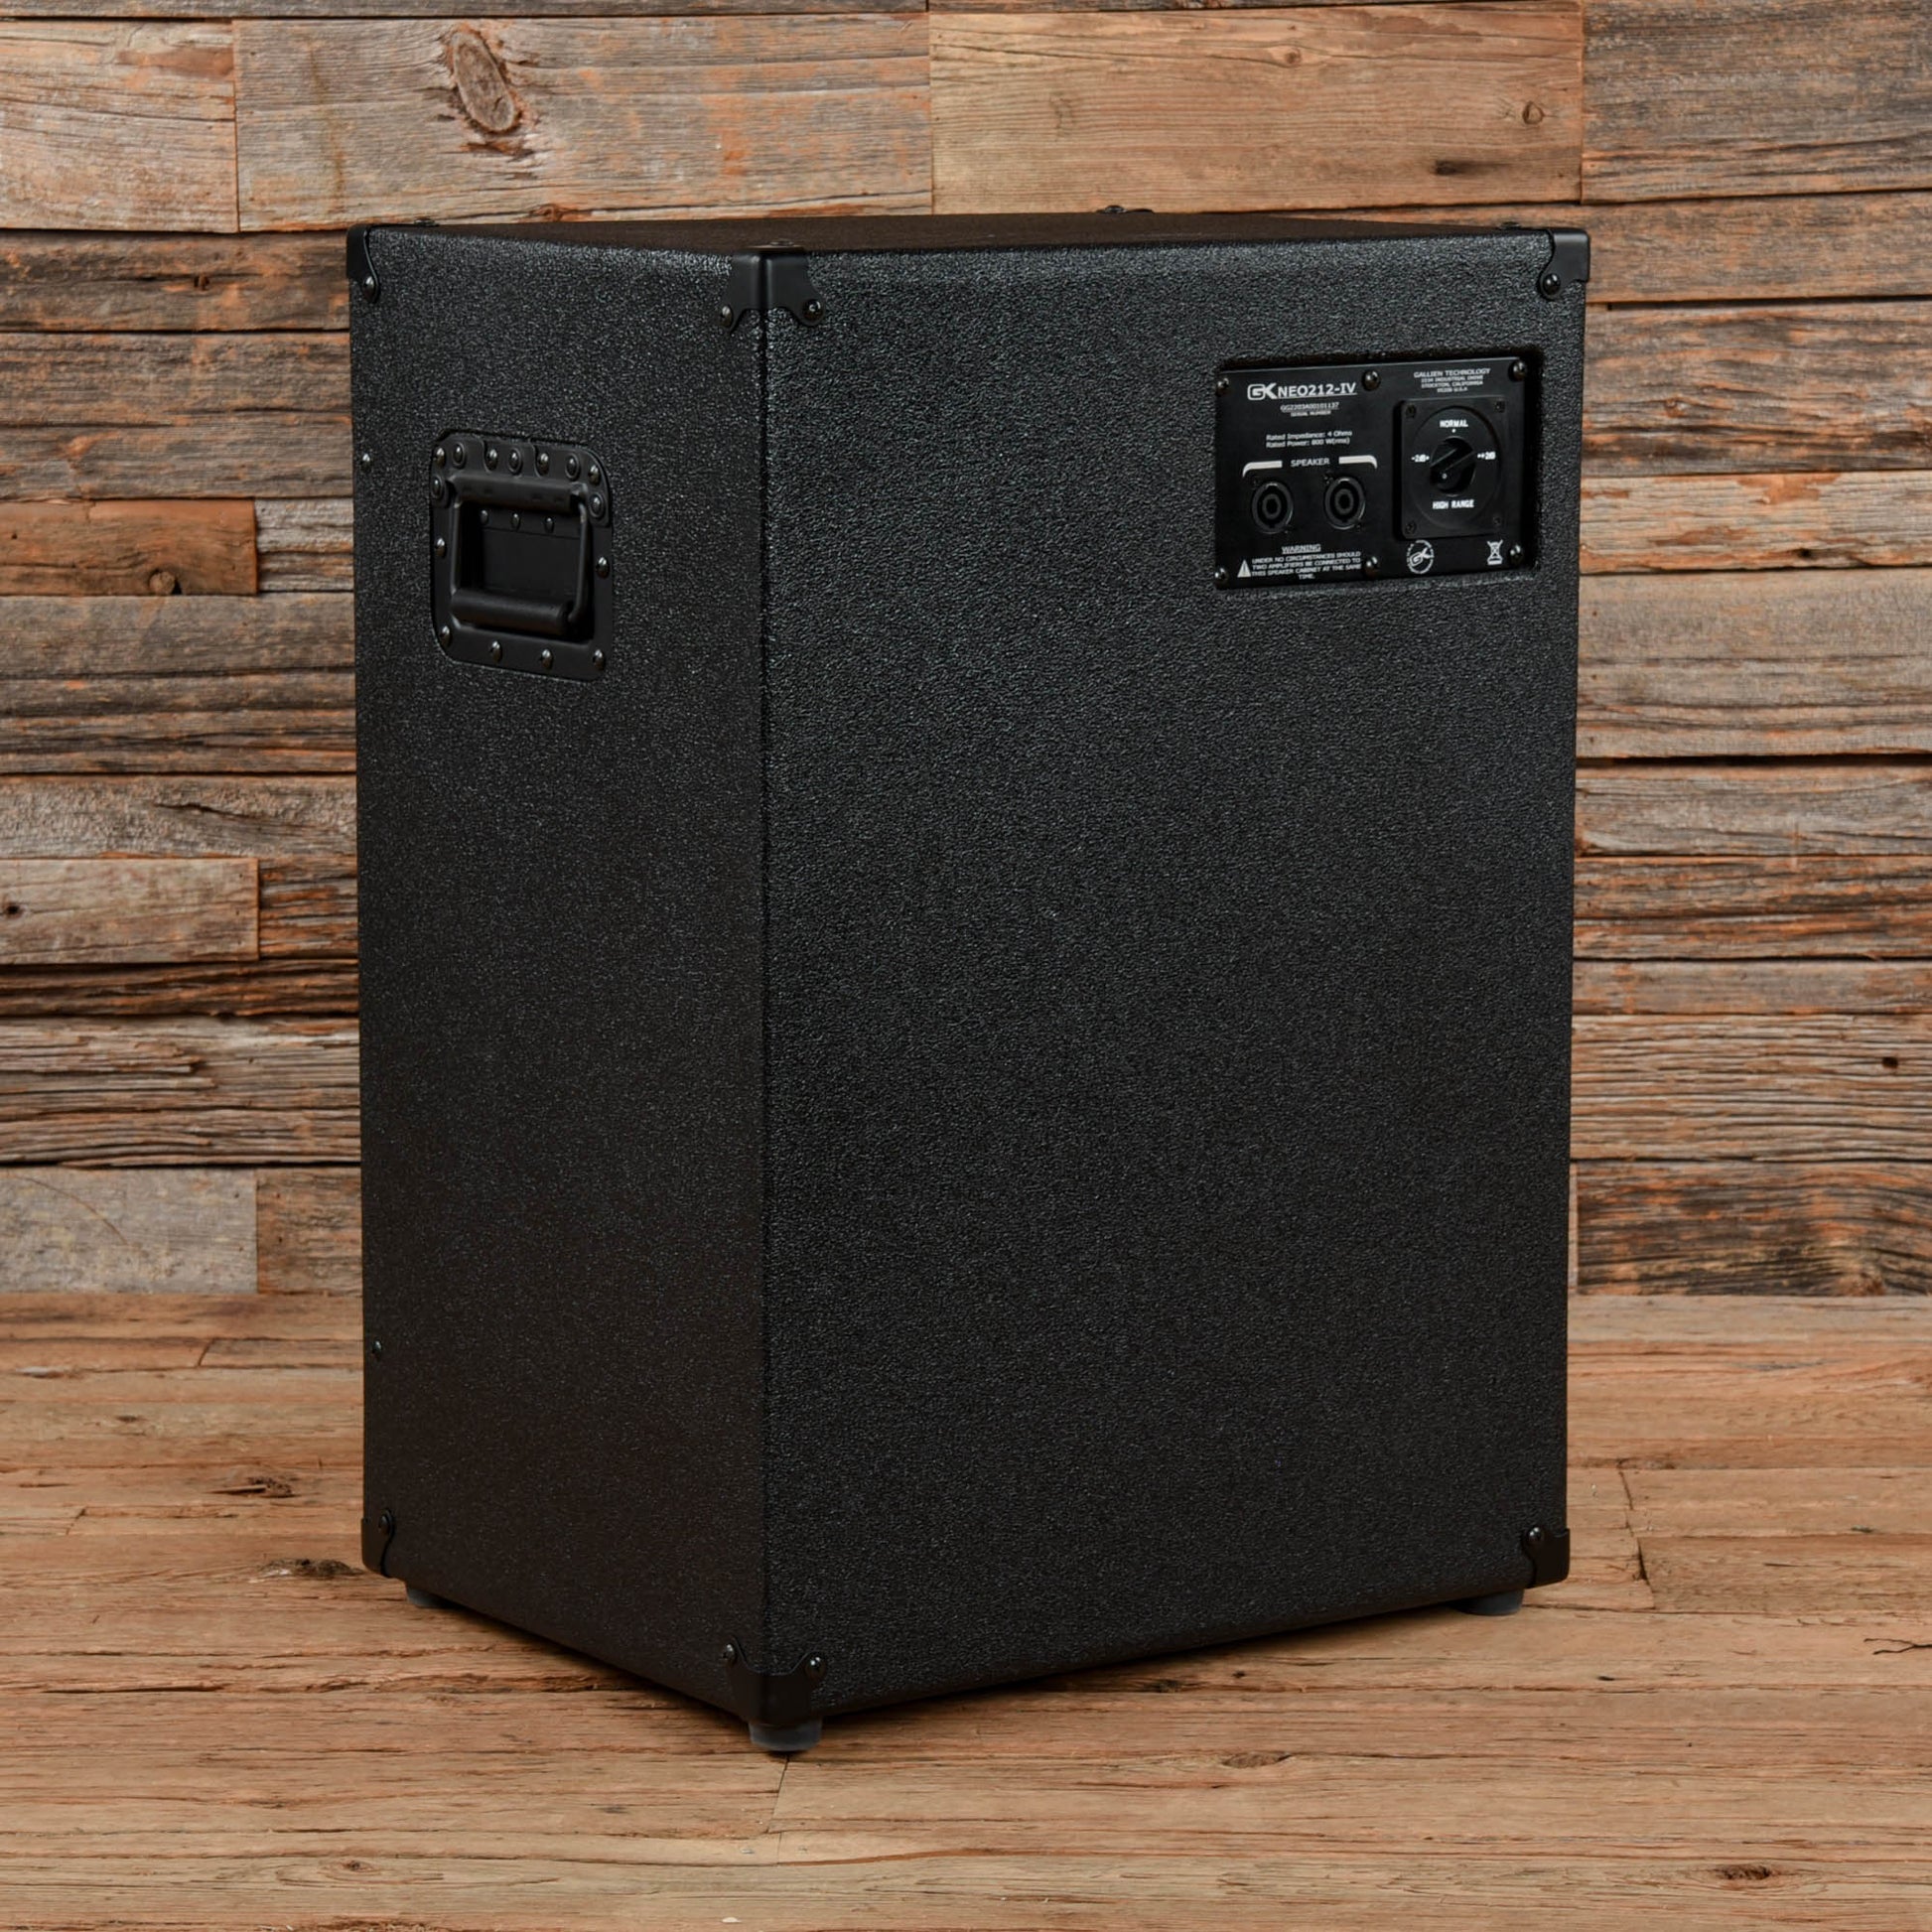 Gallien-Krueger Neo 212 IV 800-Watt 2x12" Bass Cab Amps / Bass Cabinets